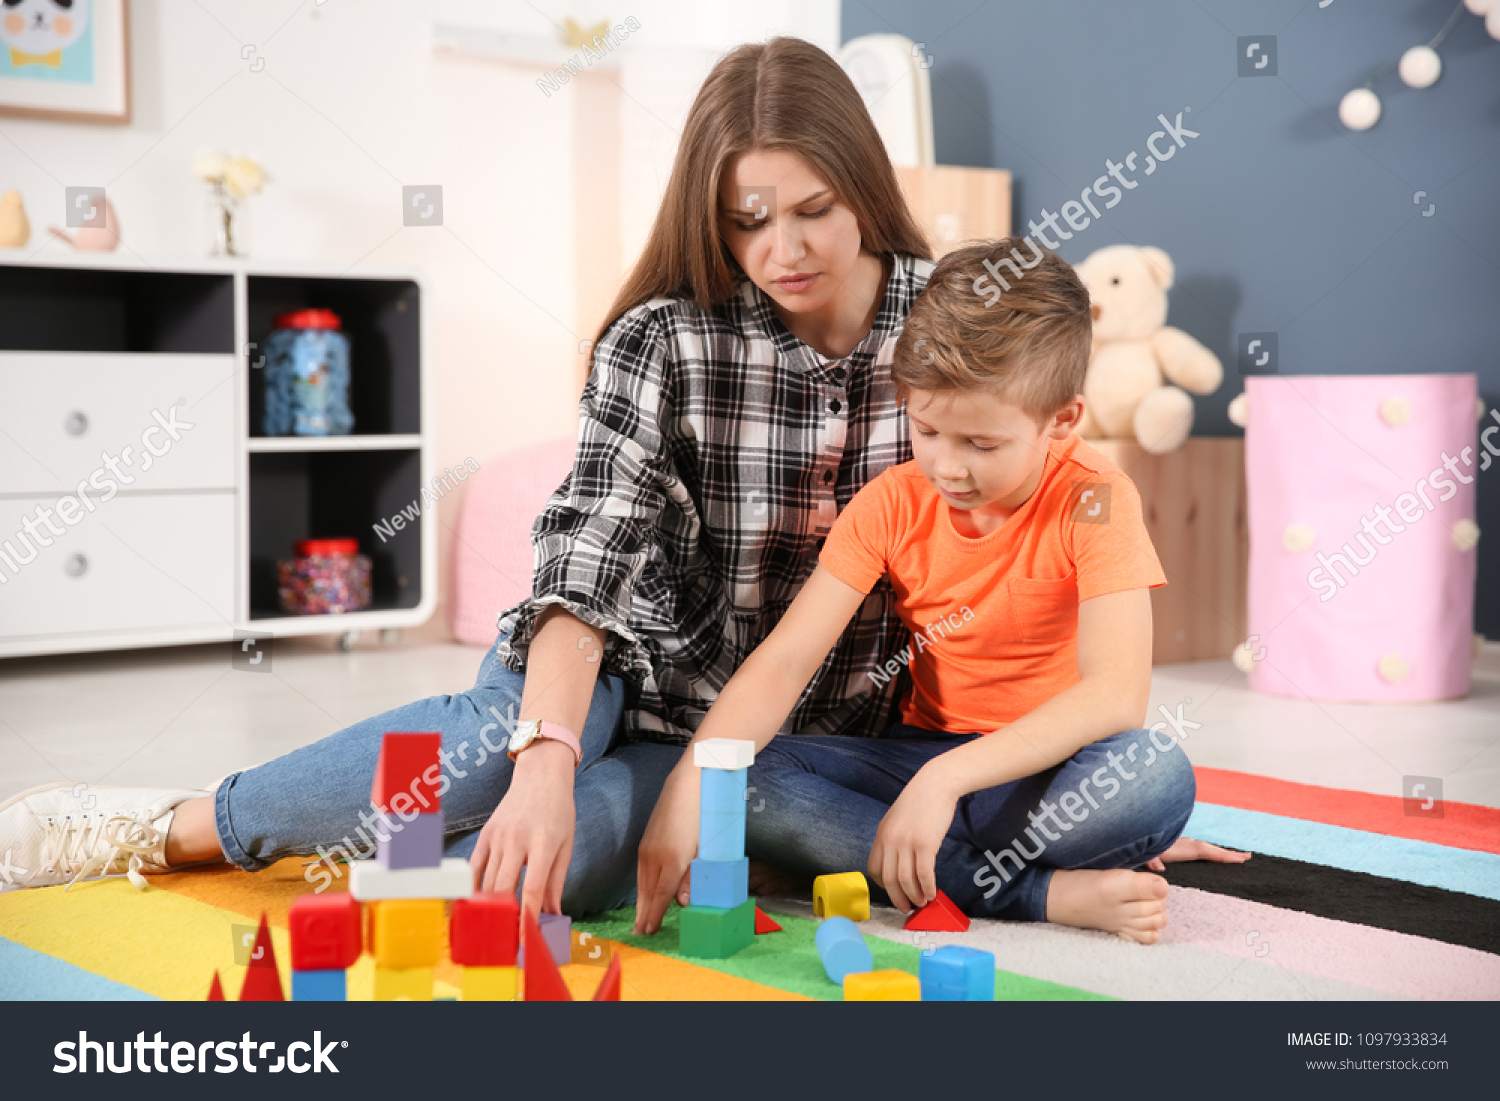 Woman little boy. Женщина играет с мальчиком. Игры дома с аутистом. Ребенок с аутизмом играет с мамой. Детский аутизм картинки.